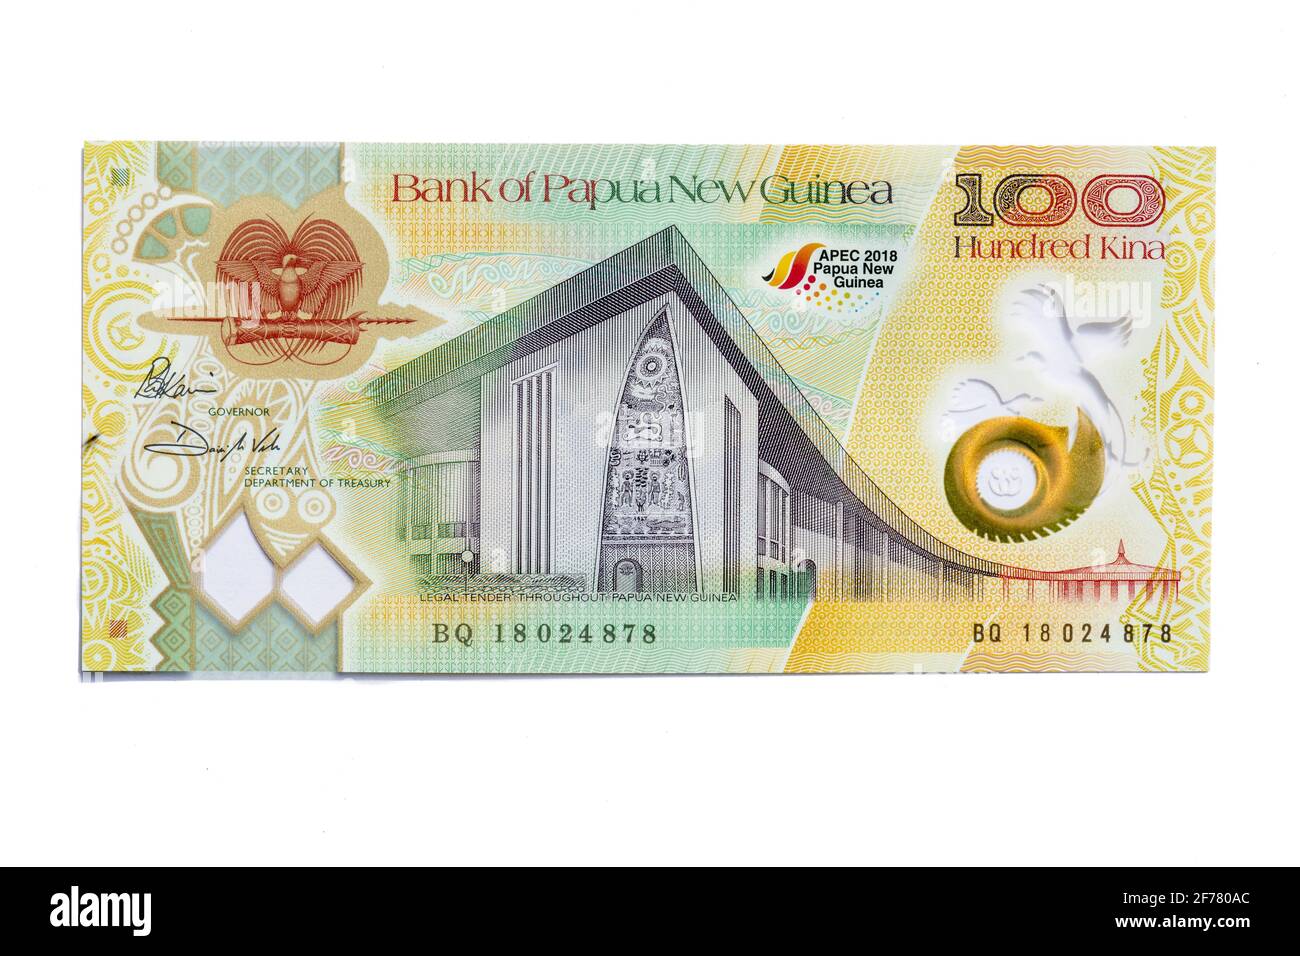 Papua New Guinea, Port Moresby, official money, kinas Stock Photo